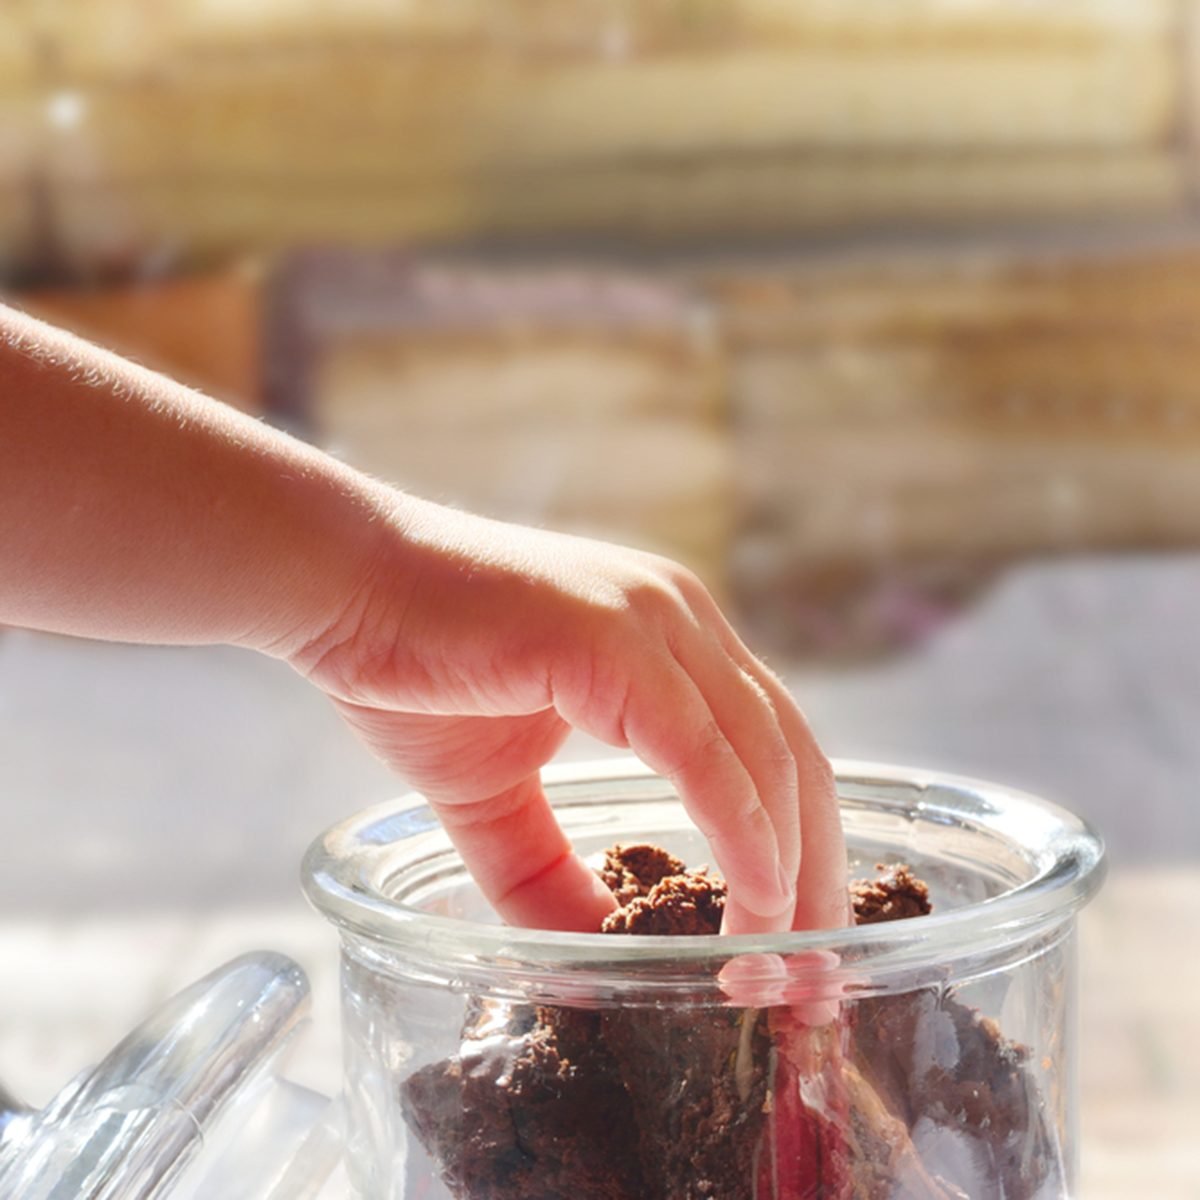 孩子的手伸向一块巧克力布朗尼储存在一个玻璃饼干罐。